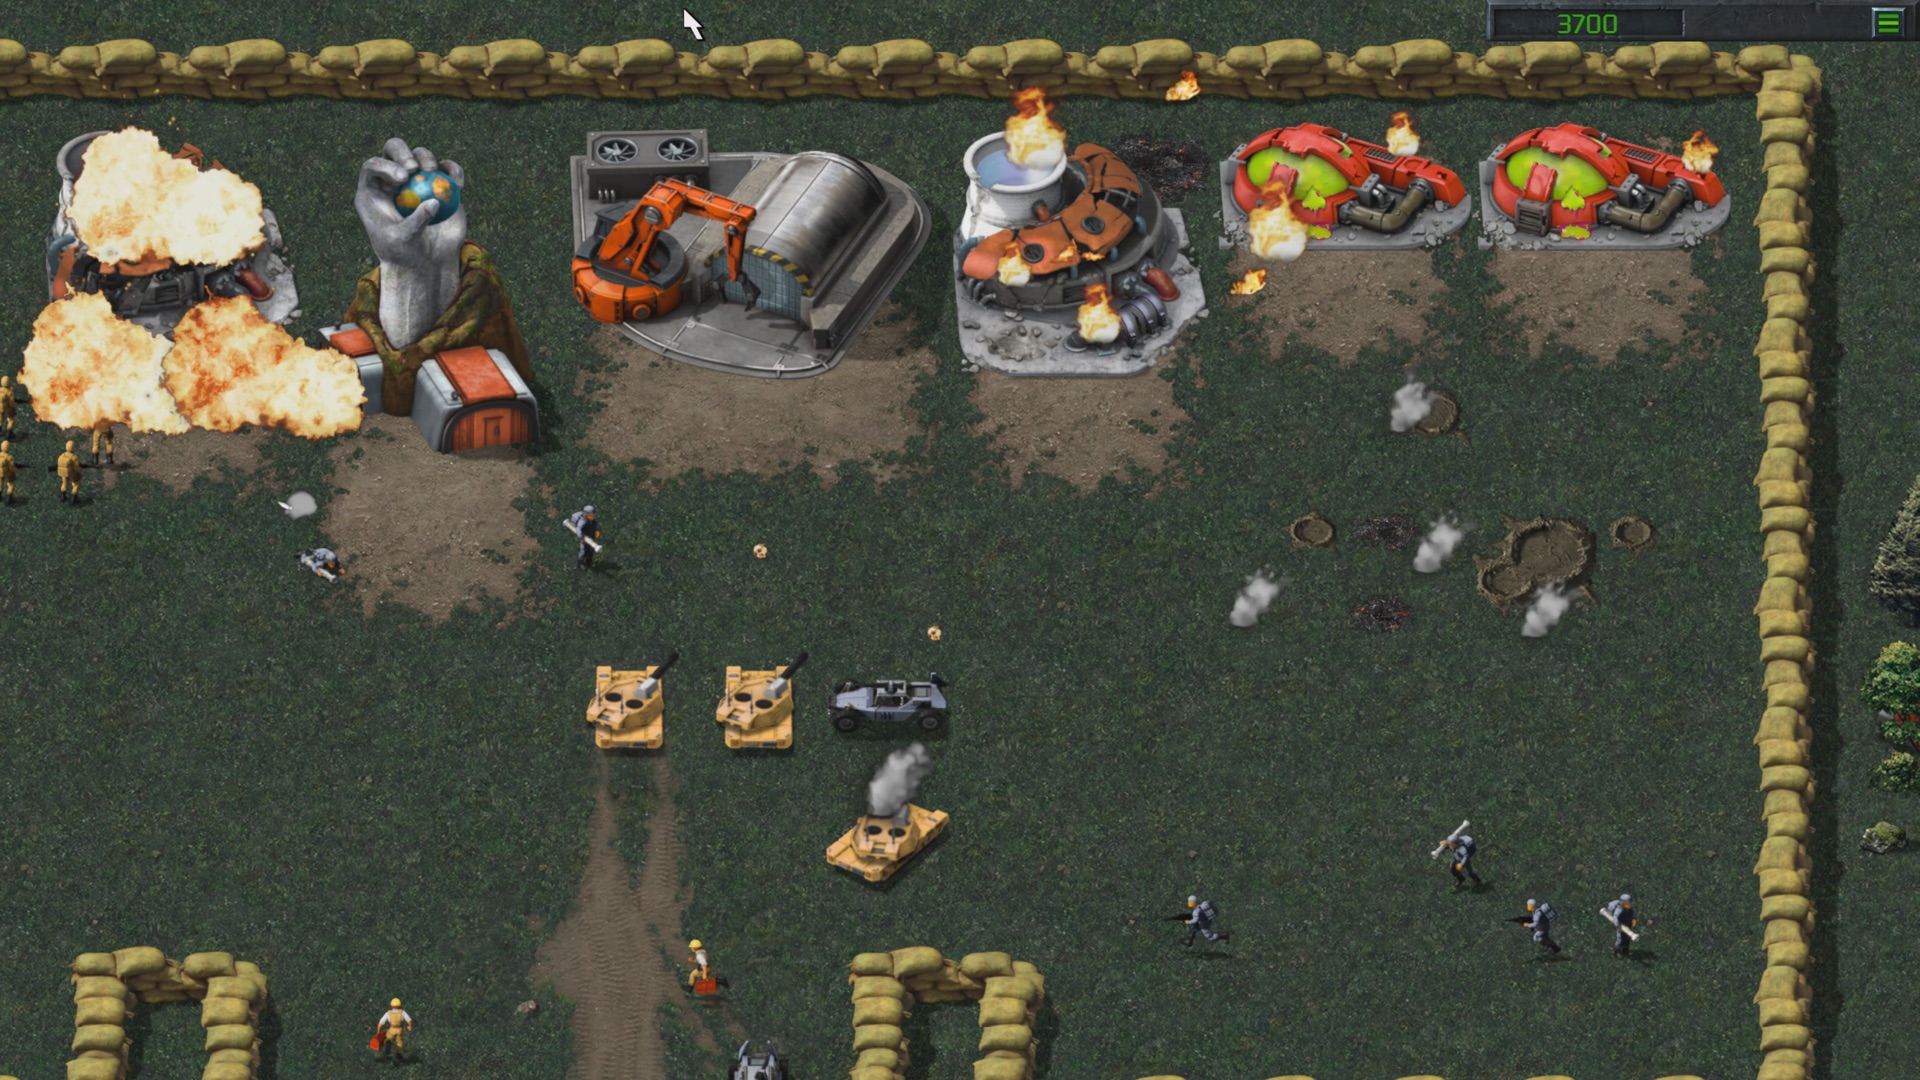 jomfru sammen gået i stykker Command & Conquer Remastered - EA Official Site